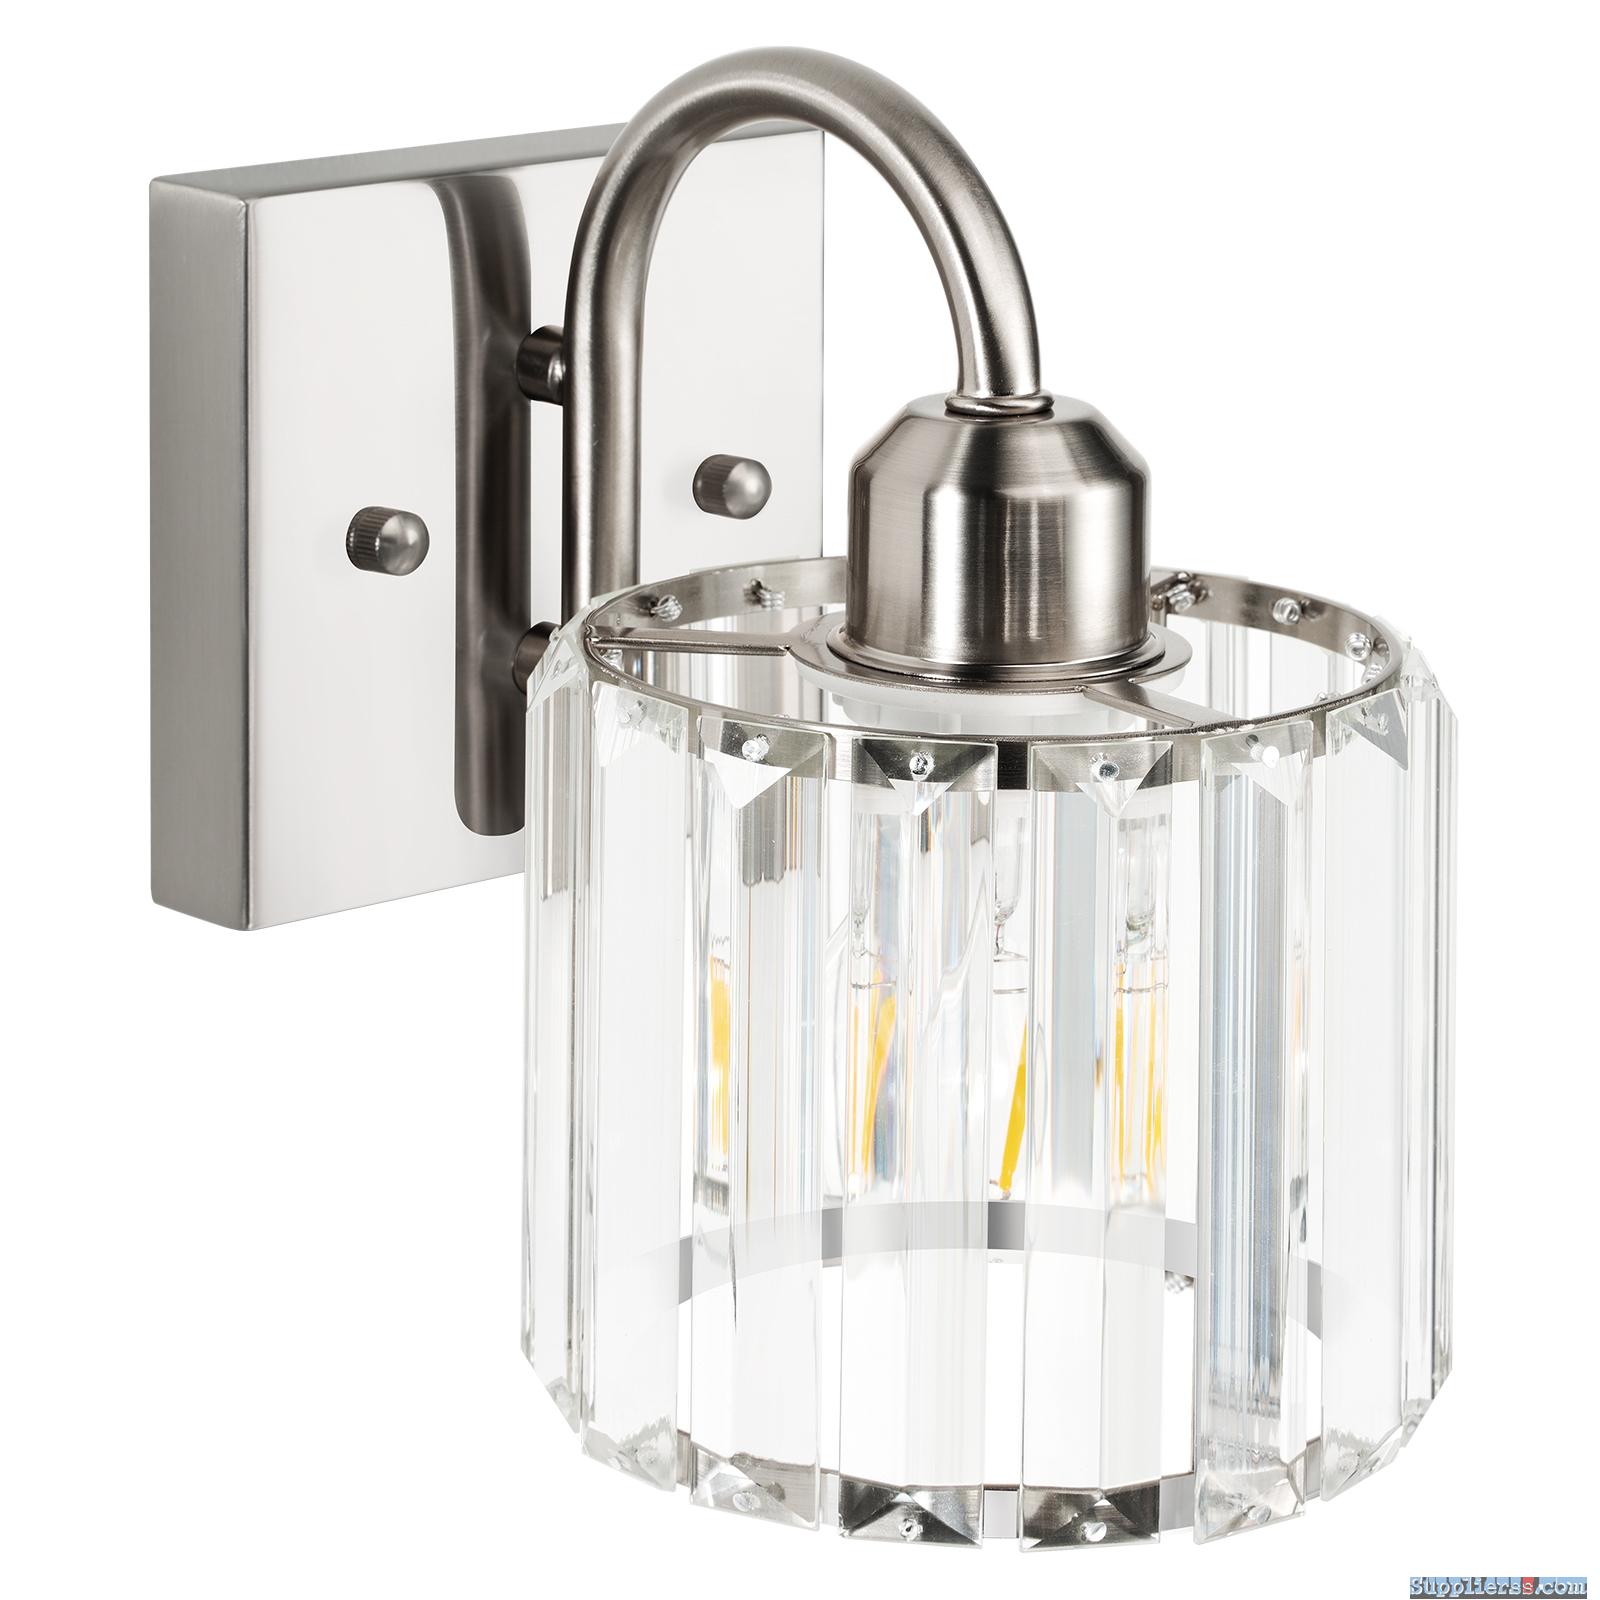 Vanity Light Fixtures, Bathroom Light Fixtures1 Light,Brushed Nickel by Valytime